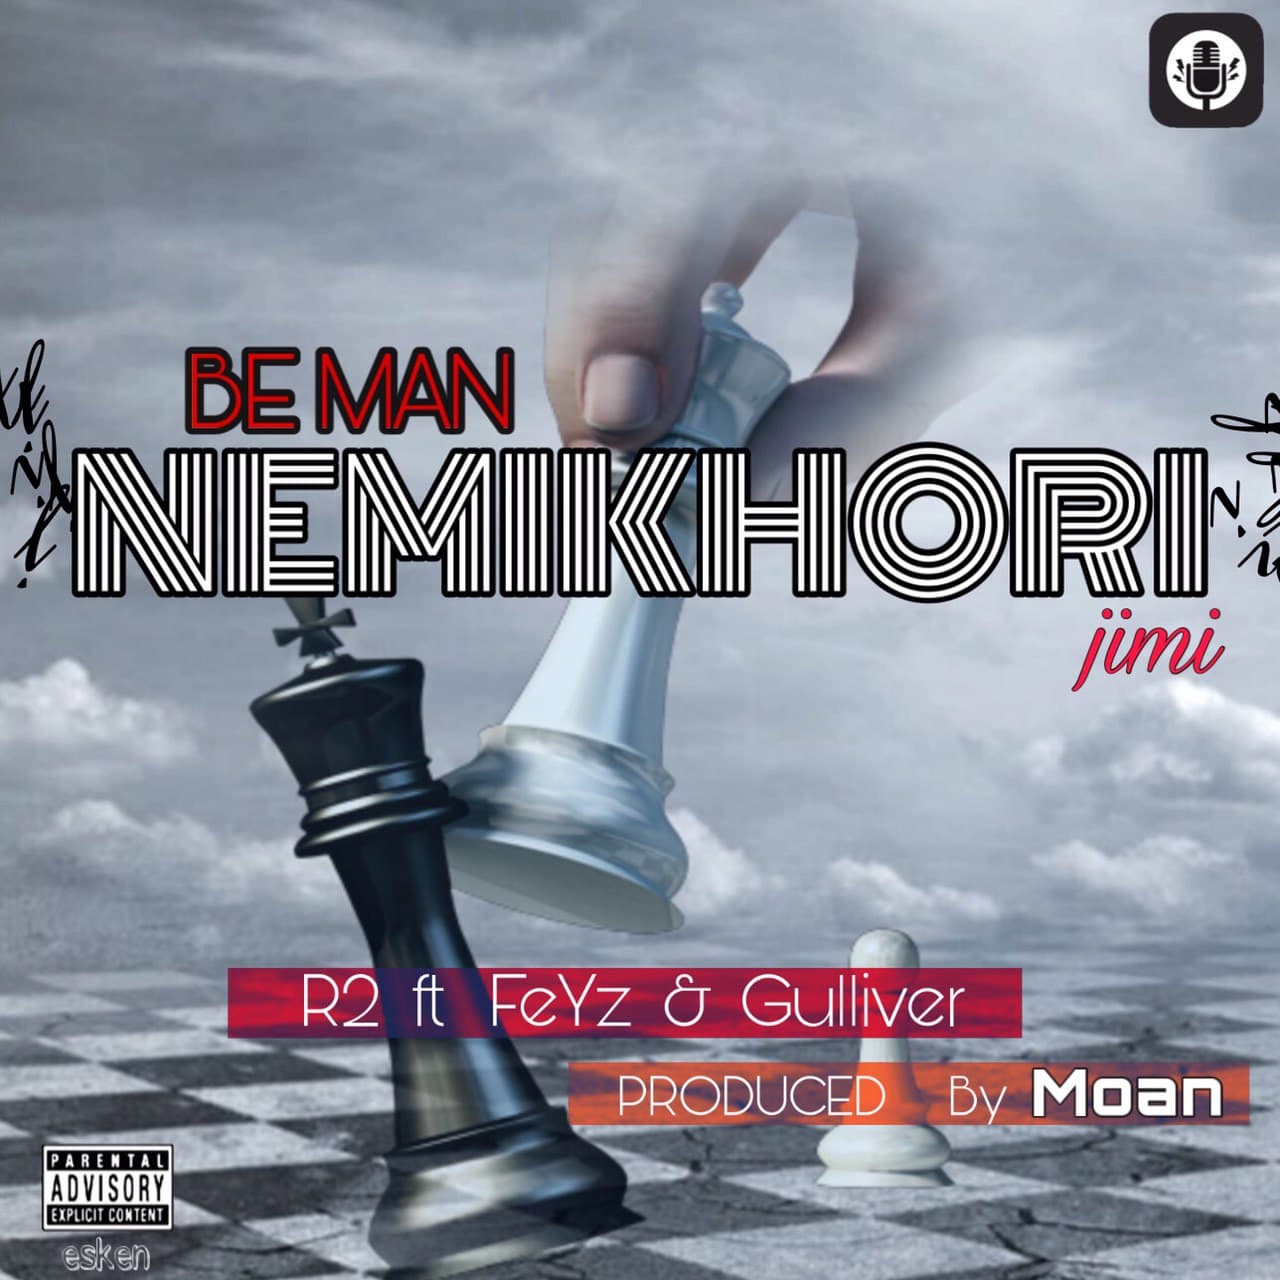  دانلود آهنگ جدید علی آر تو - به من نمیخوری جیمی | Download New Music By Ali R2 - Be Man Nemikhori Jimi (feat. Feyz & Gulliver)